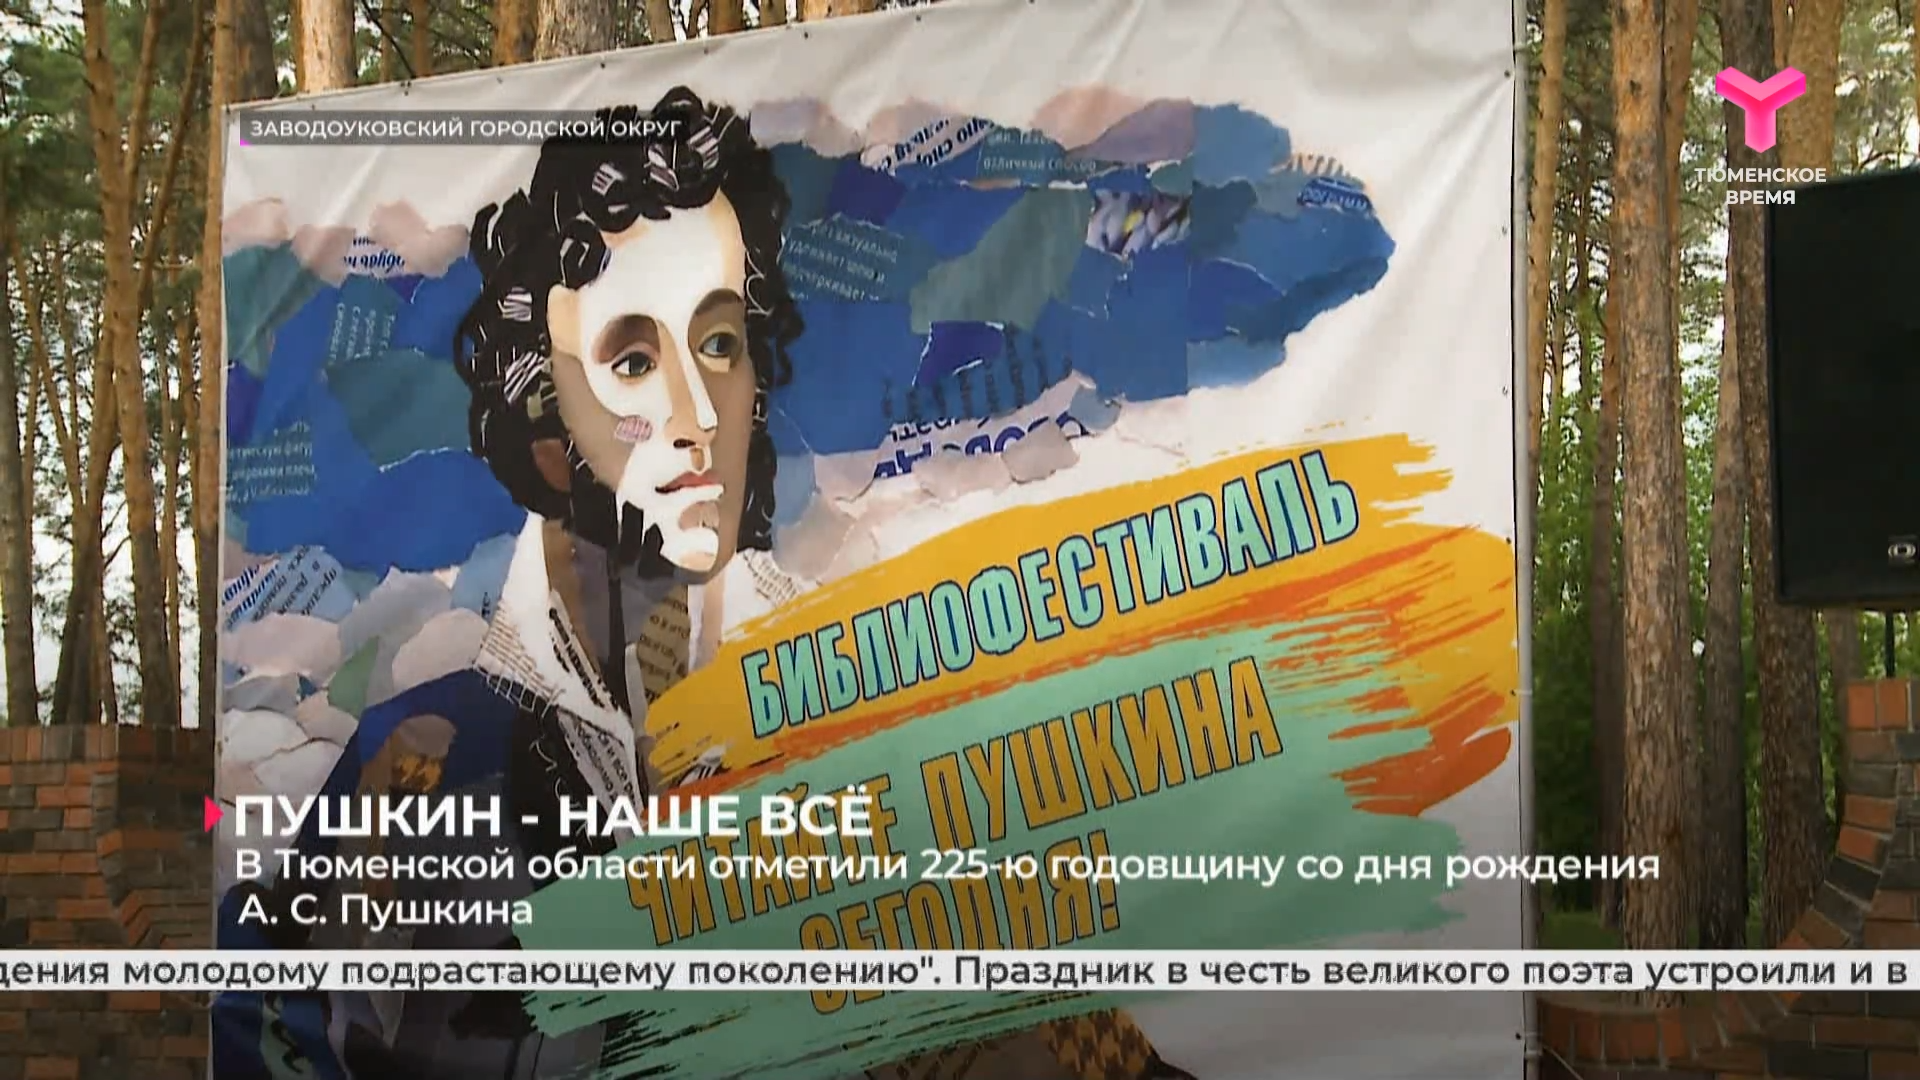 225-й день рождения Пушкина отметили в областной научной библиотеке имени Менделеева